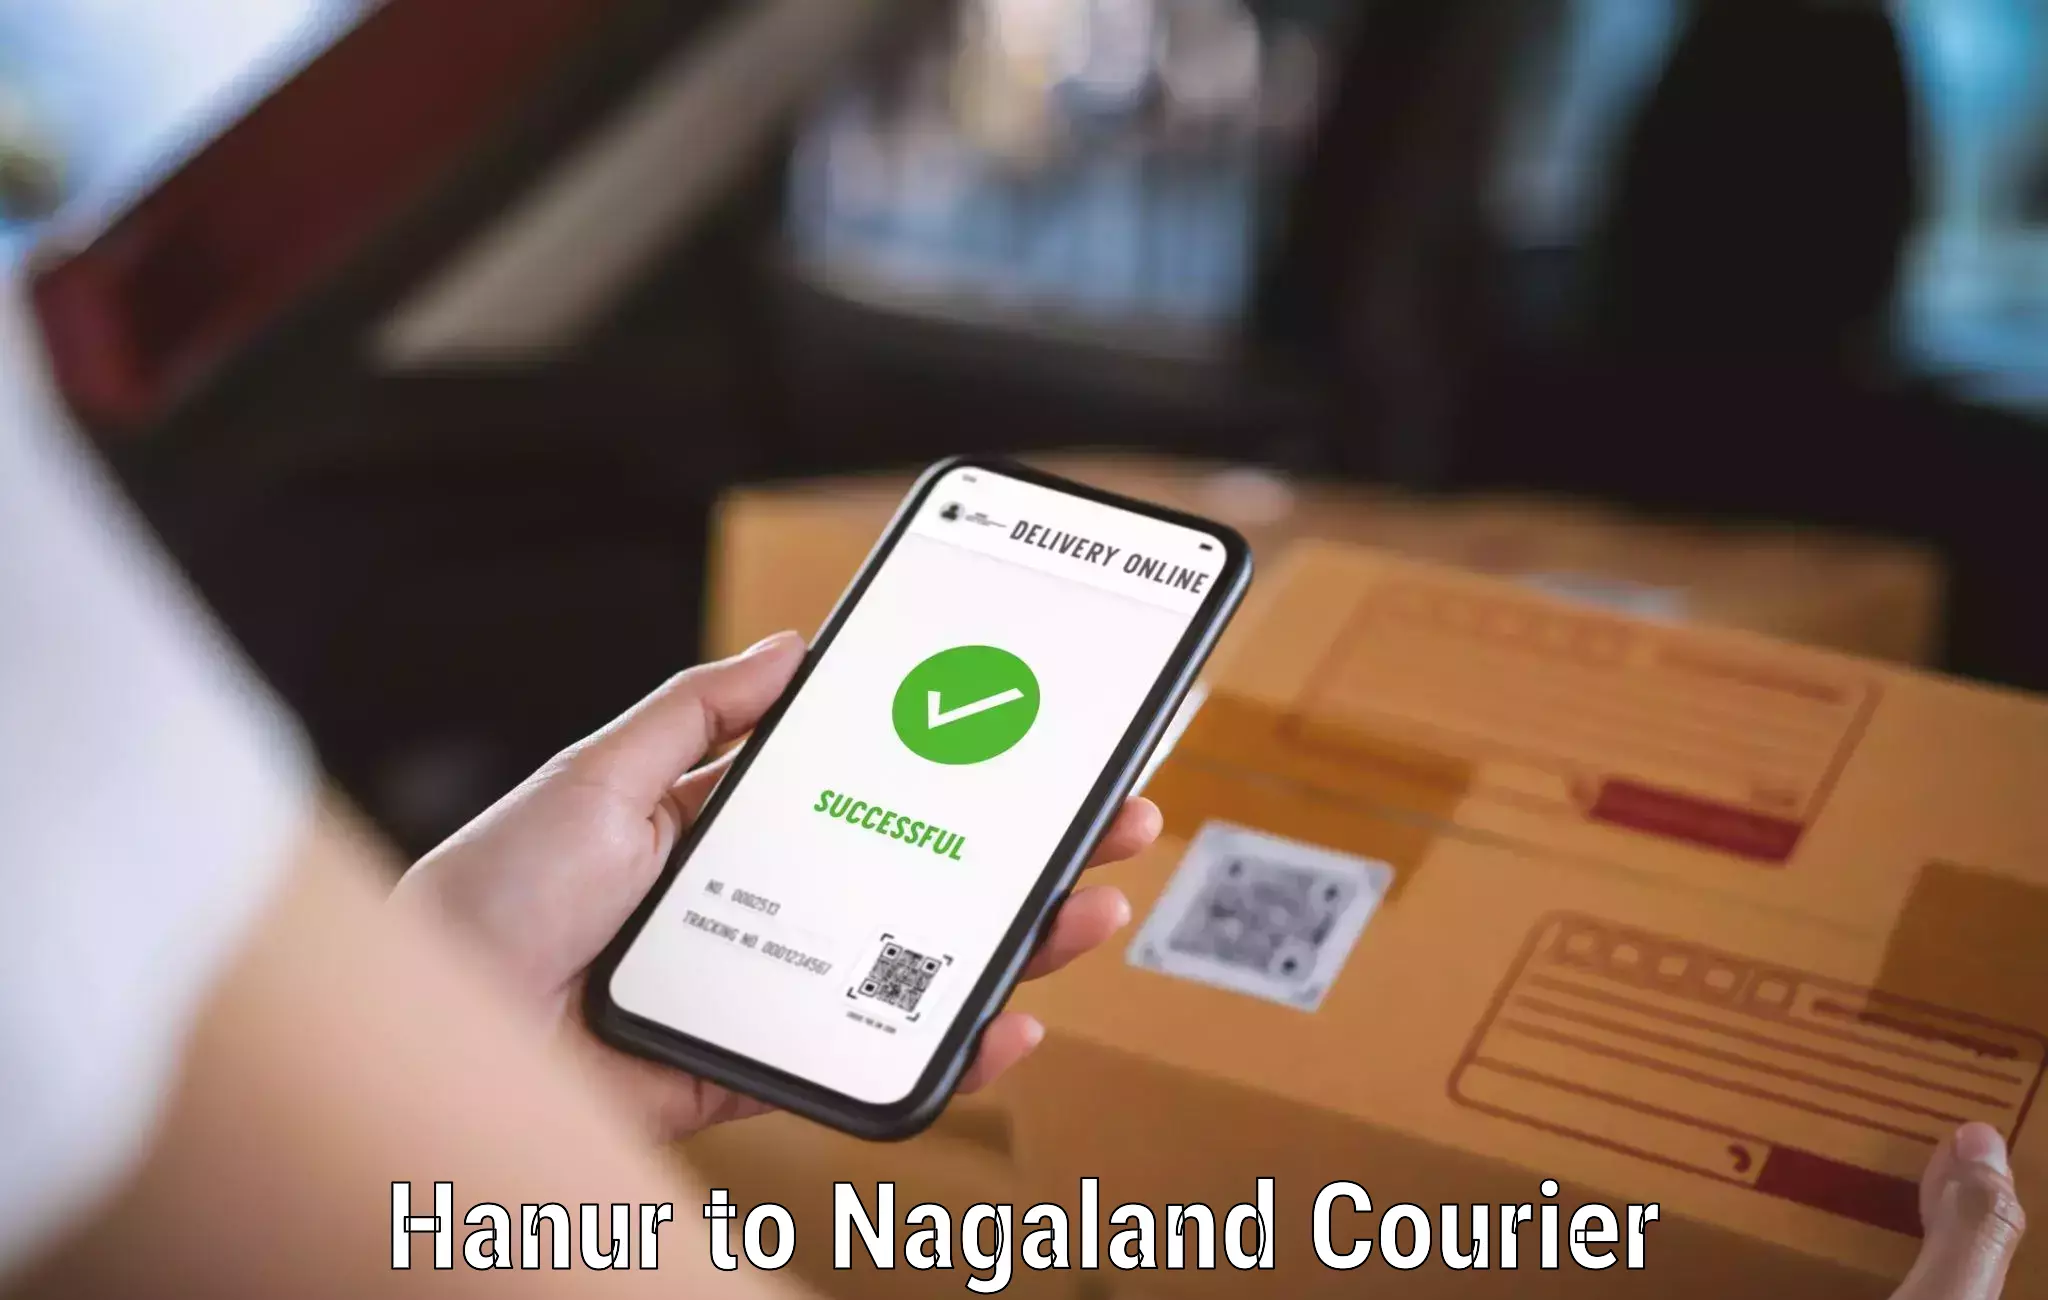 Cargo courier service Hanur to Nagaland